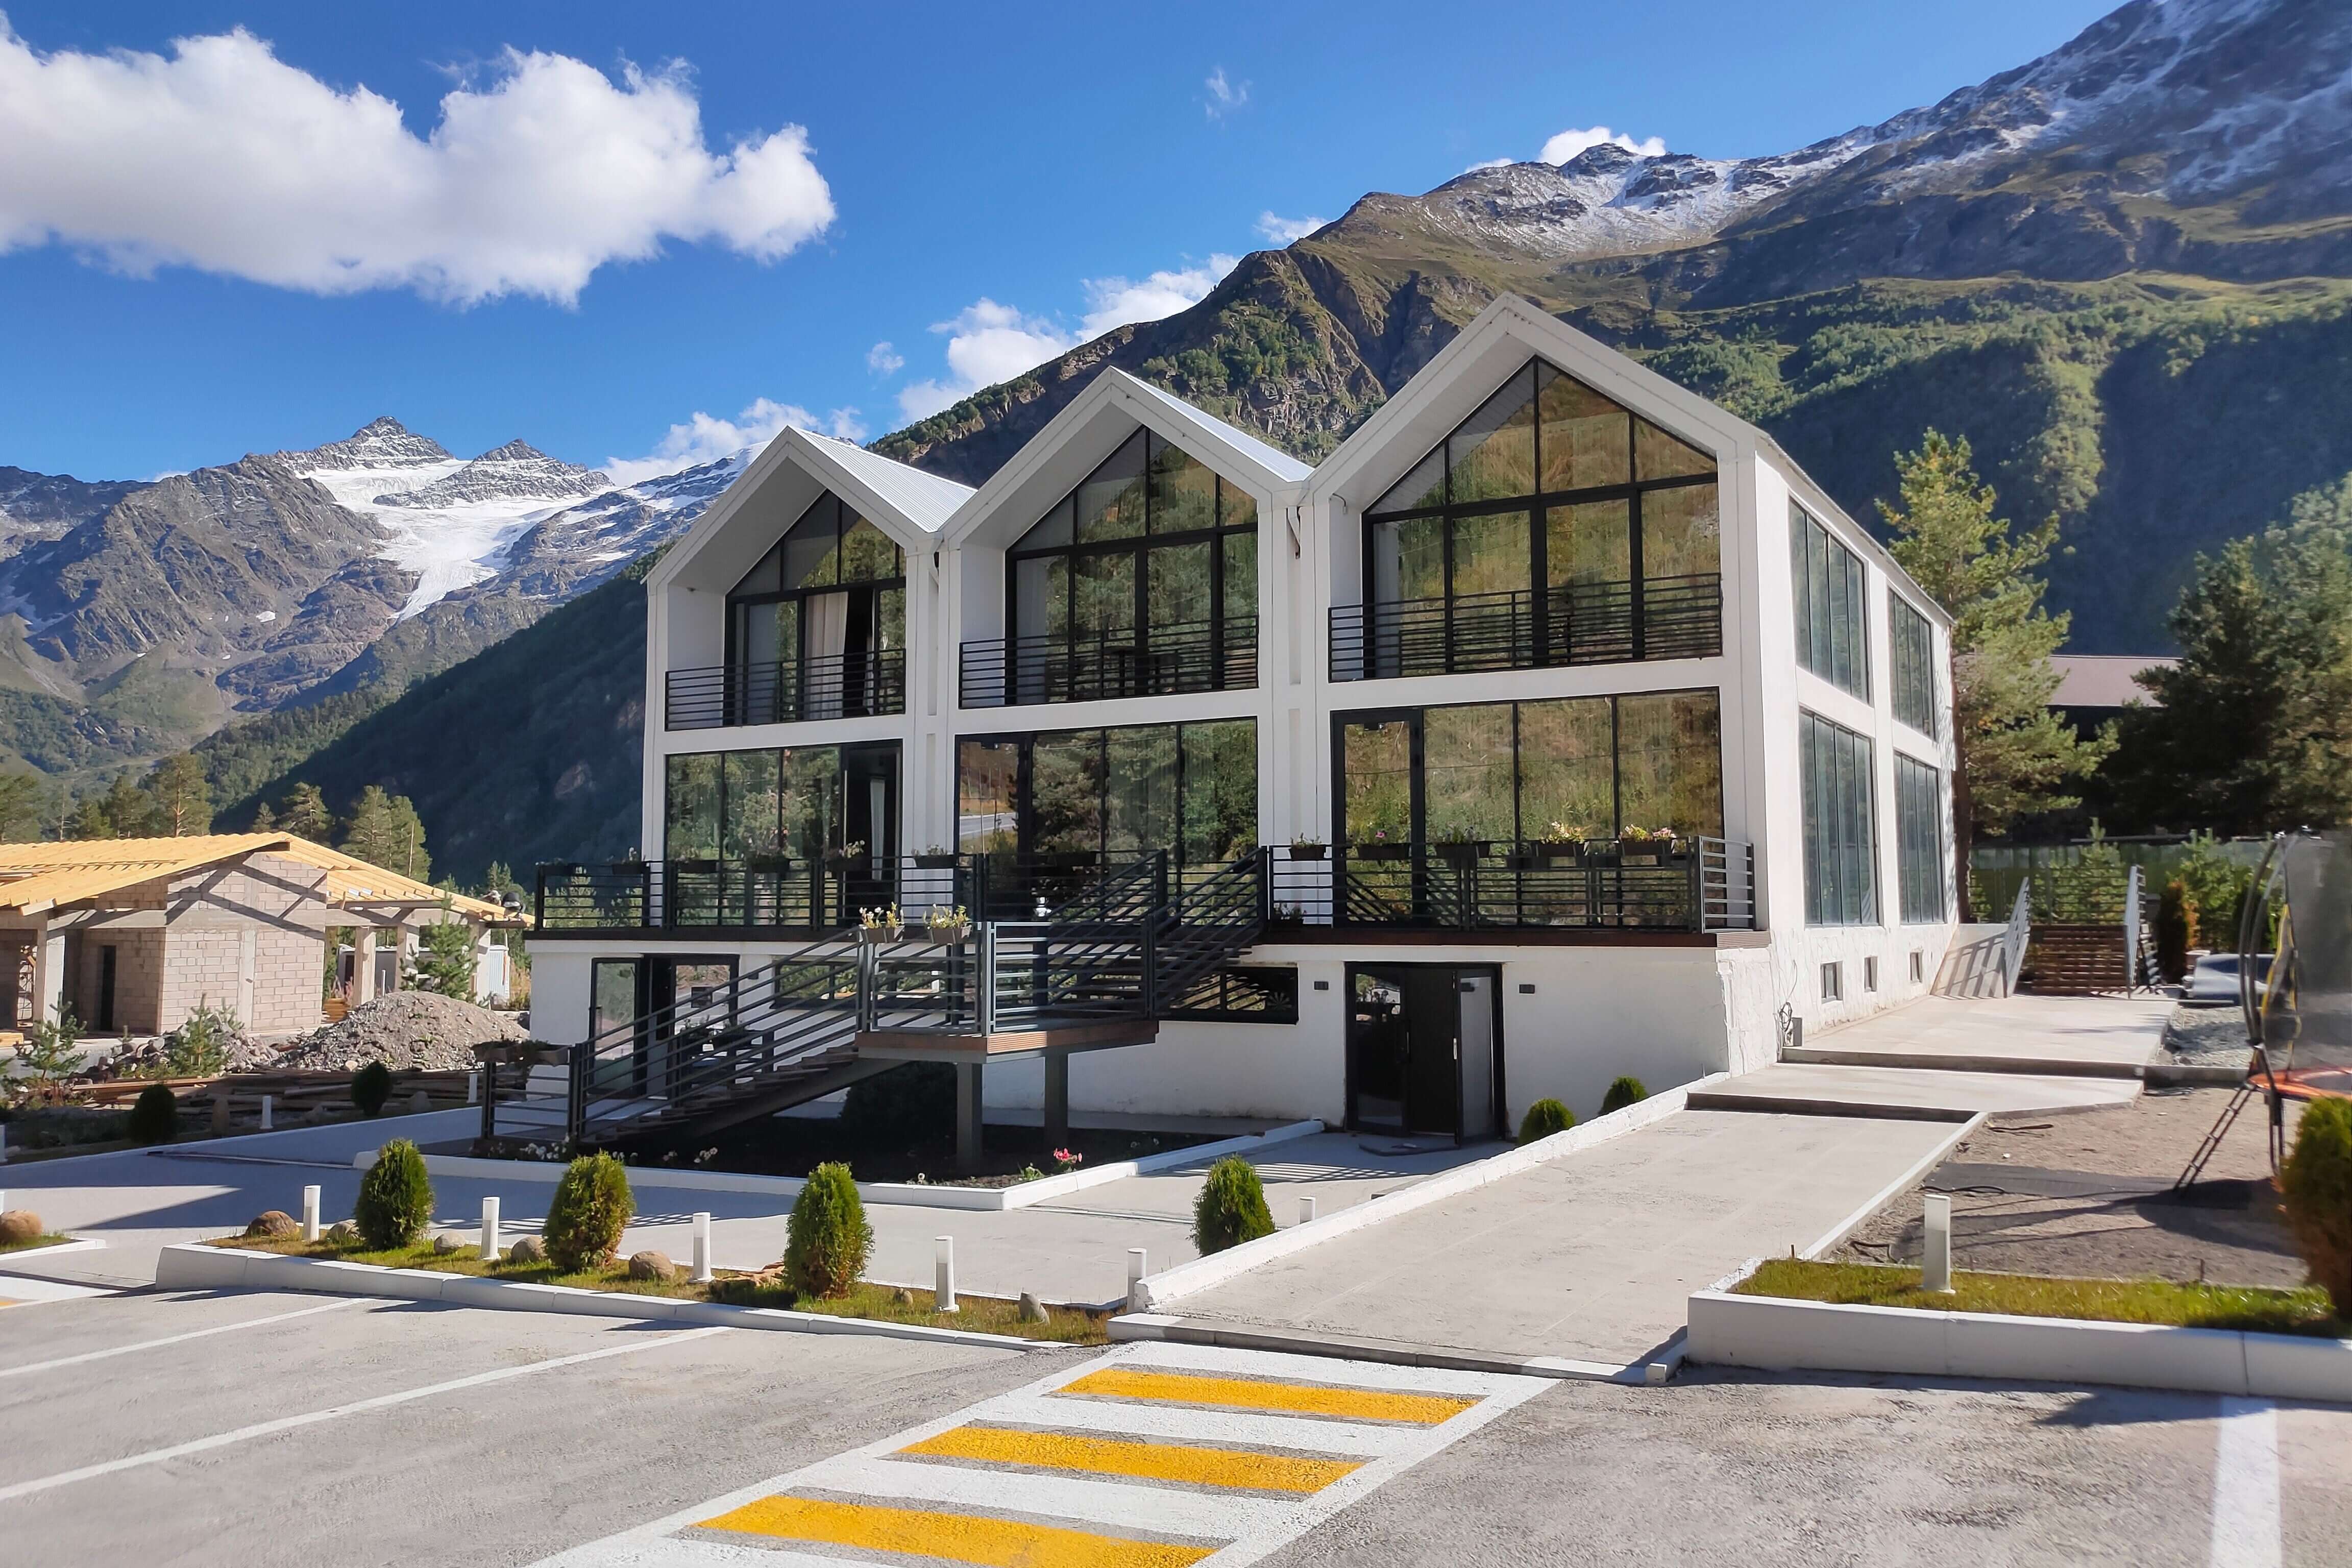 Здание отеля - хороший пример современной архитектуры в горах Кавказа.